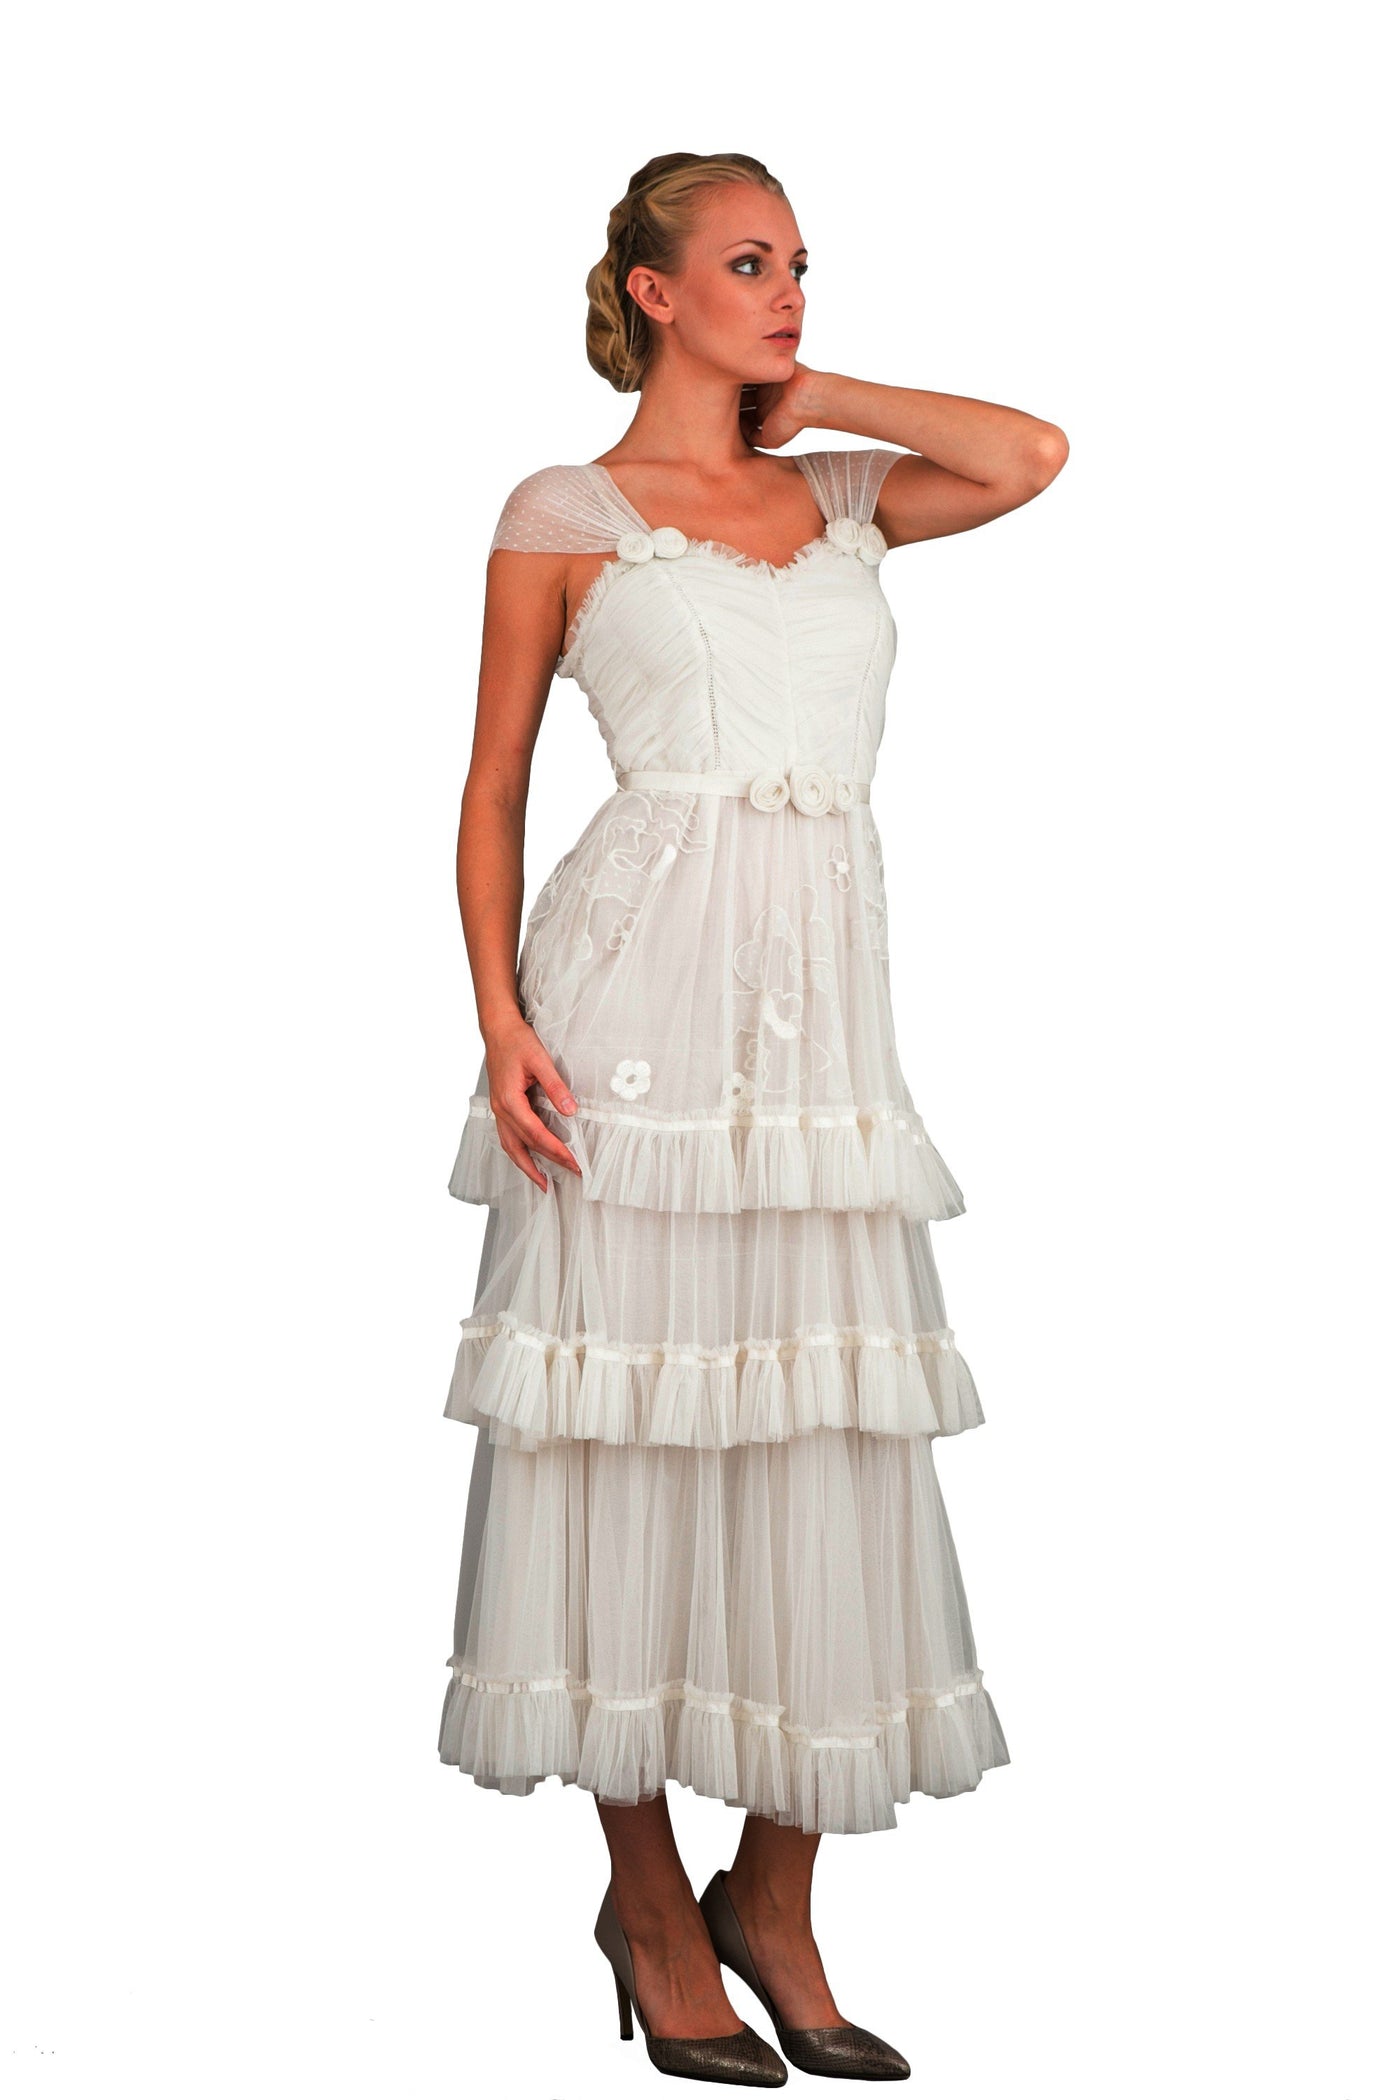 Nataya 40244 Vintage Inspired Dress in Ivory